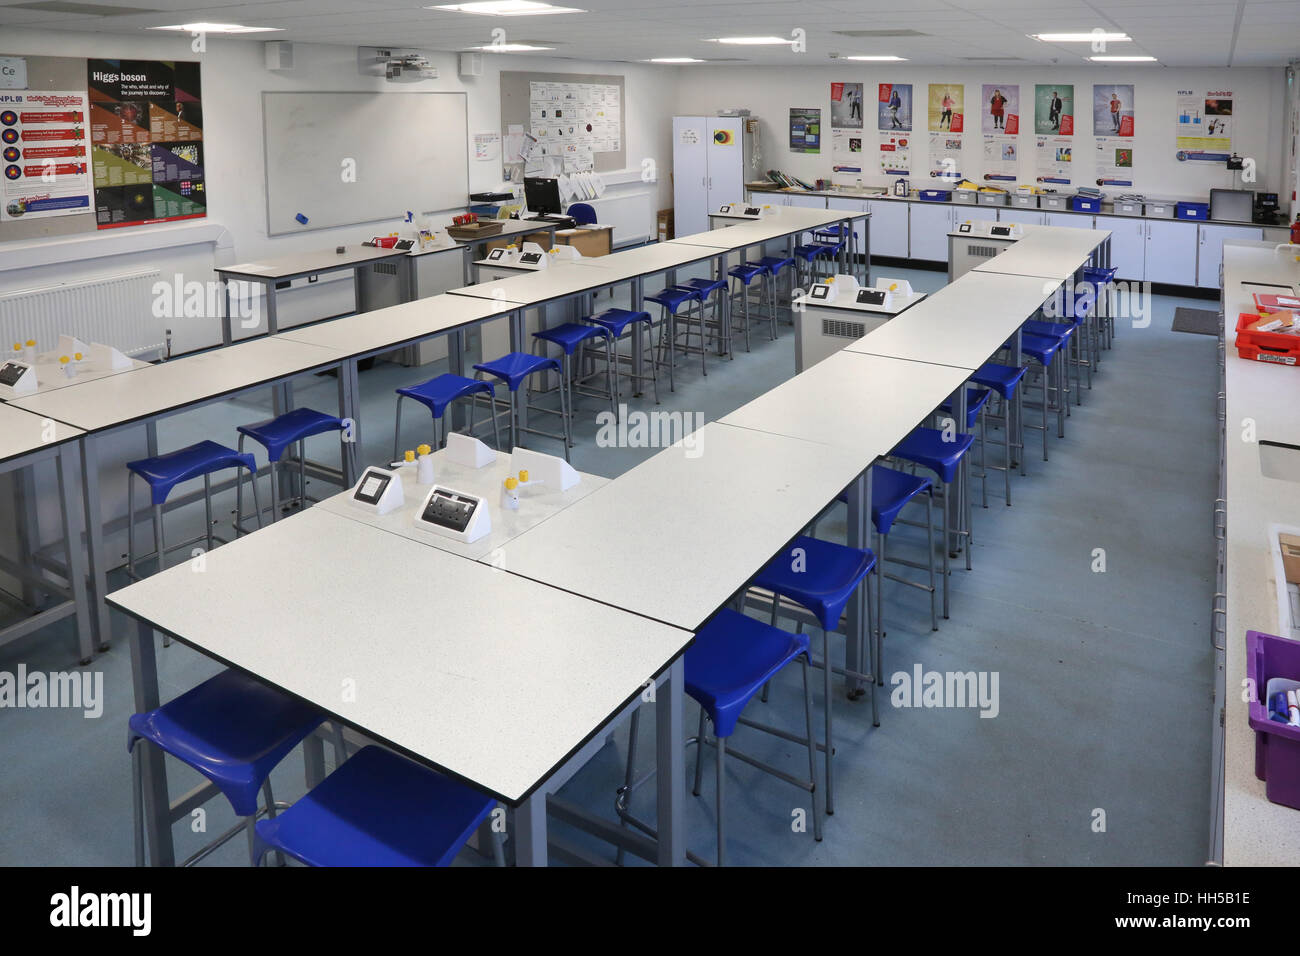 Science Klassenzimmer in einer neuen britischen Sekundarschule. Zeigt Laborbänke, Hocker und wissenschaftliche Geräte. Leer, keine Pupillen. Stockfoto